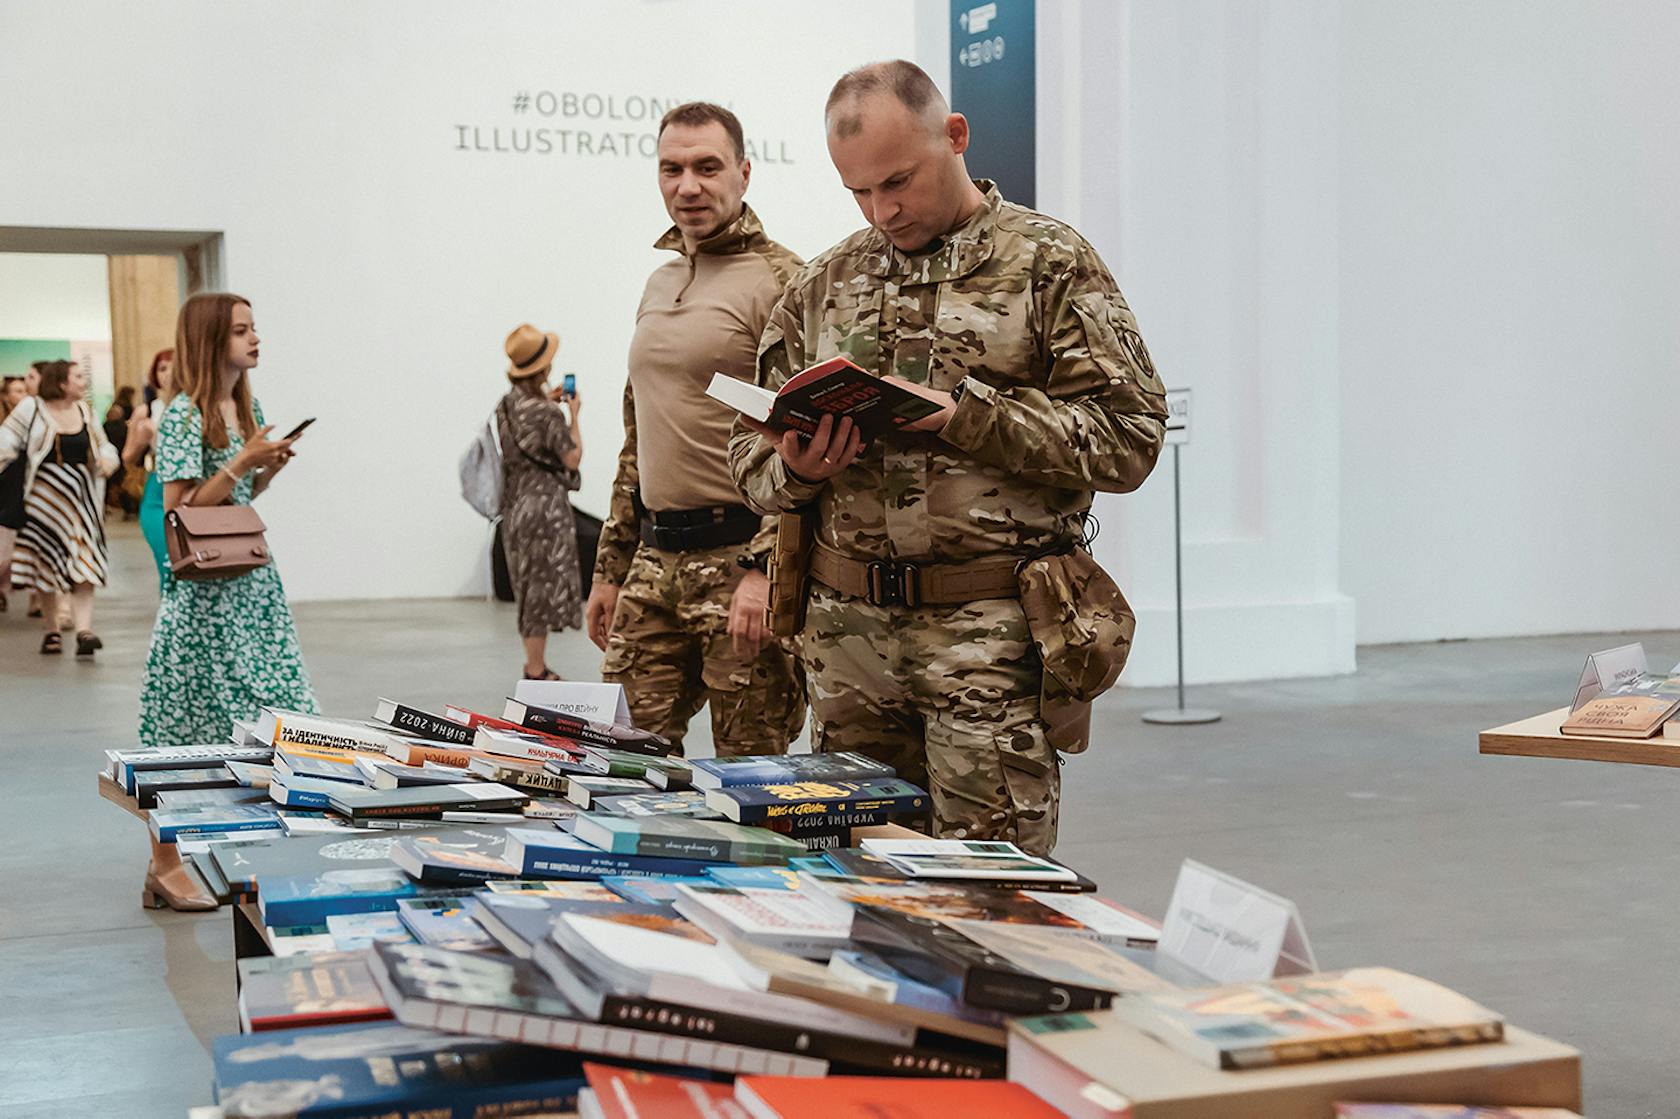 Ook militairen bezoeken het boekenfestival.